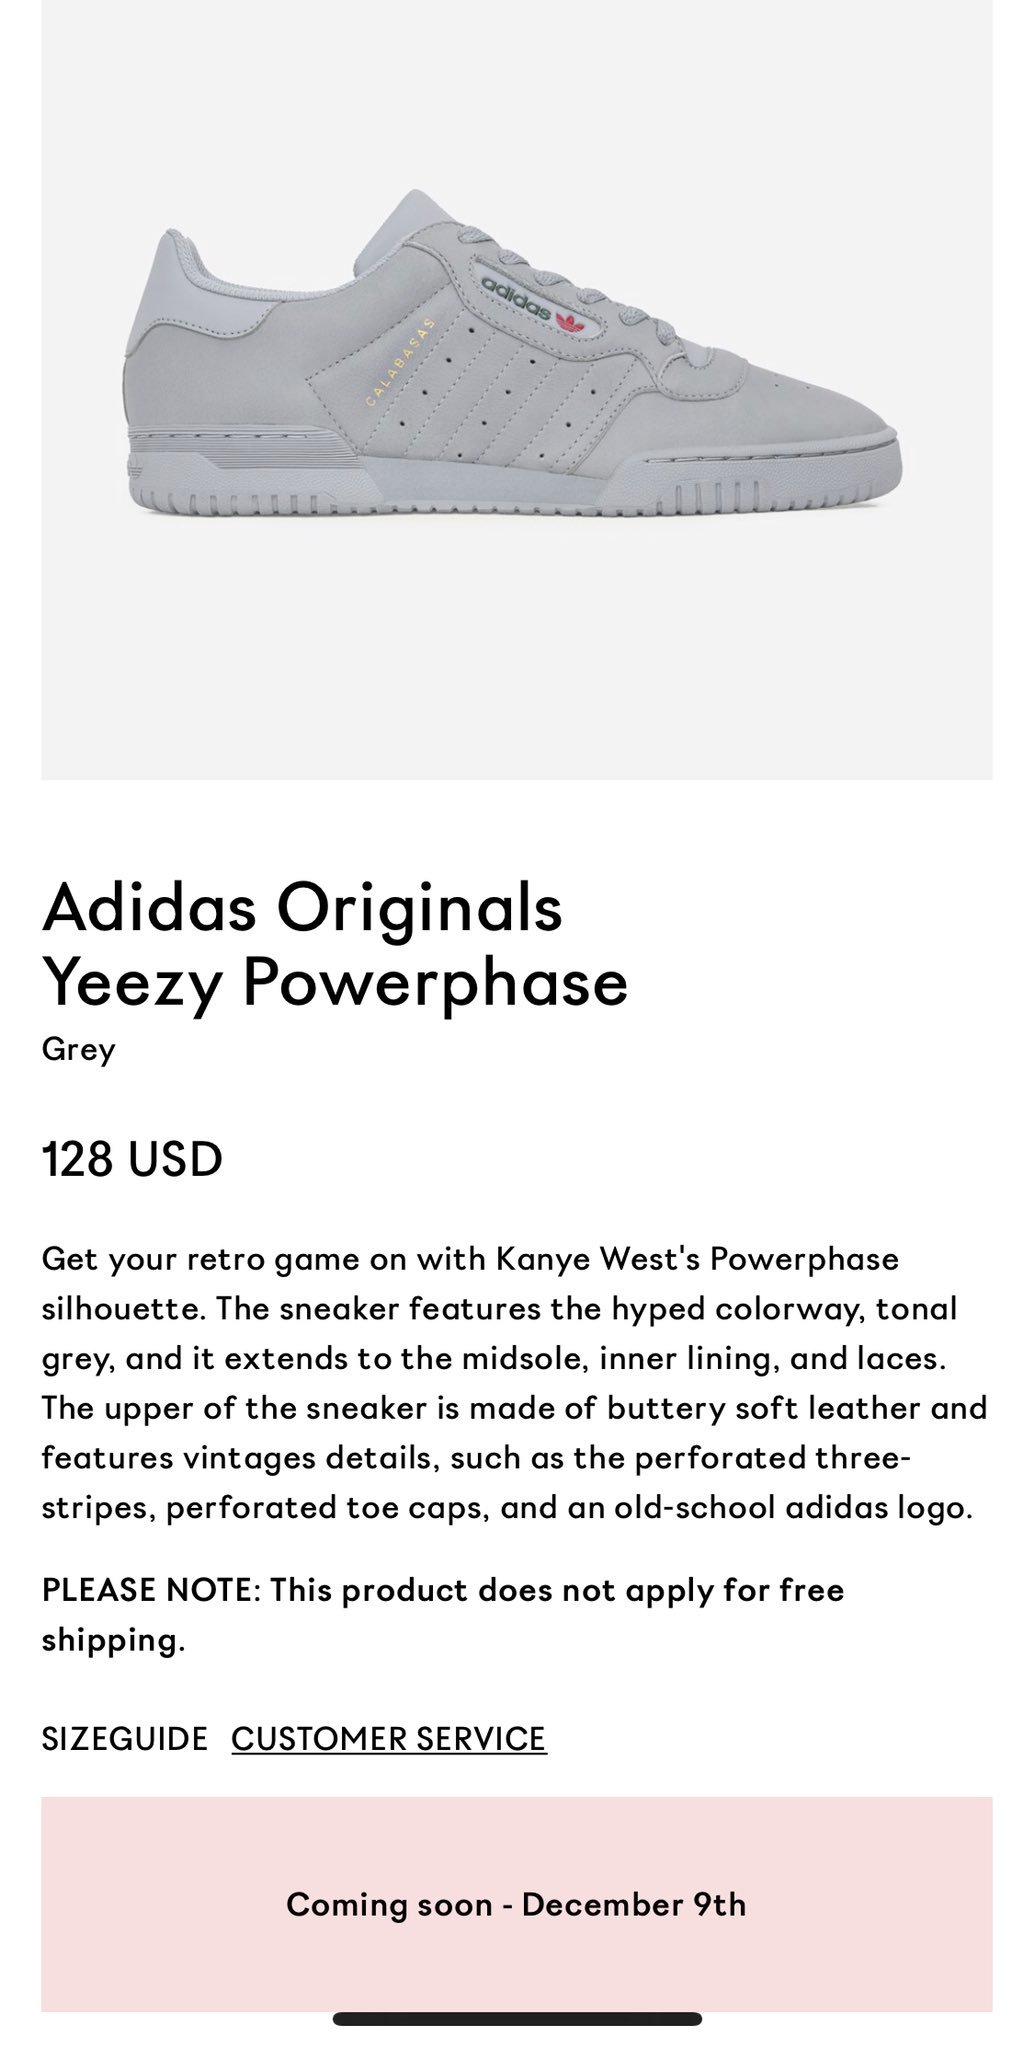 Adidas Yeezy “Powerphase” coming 